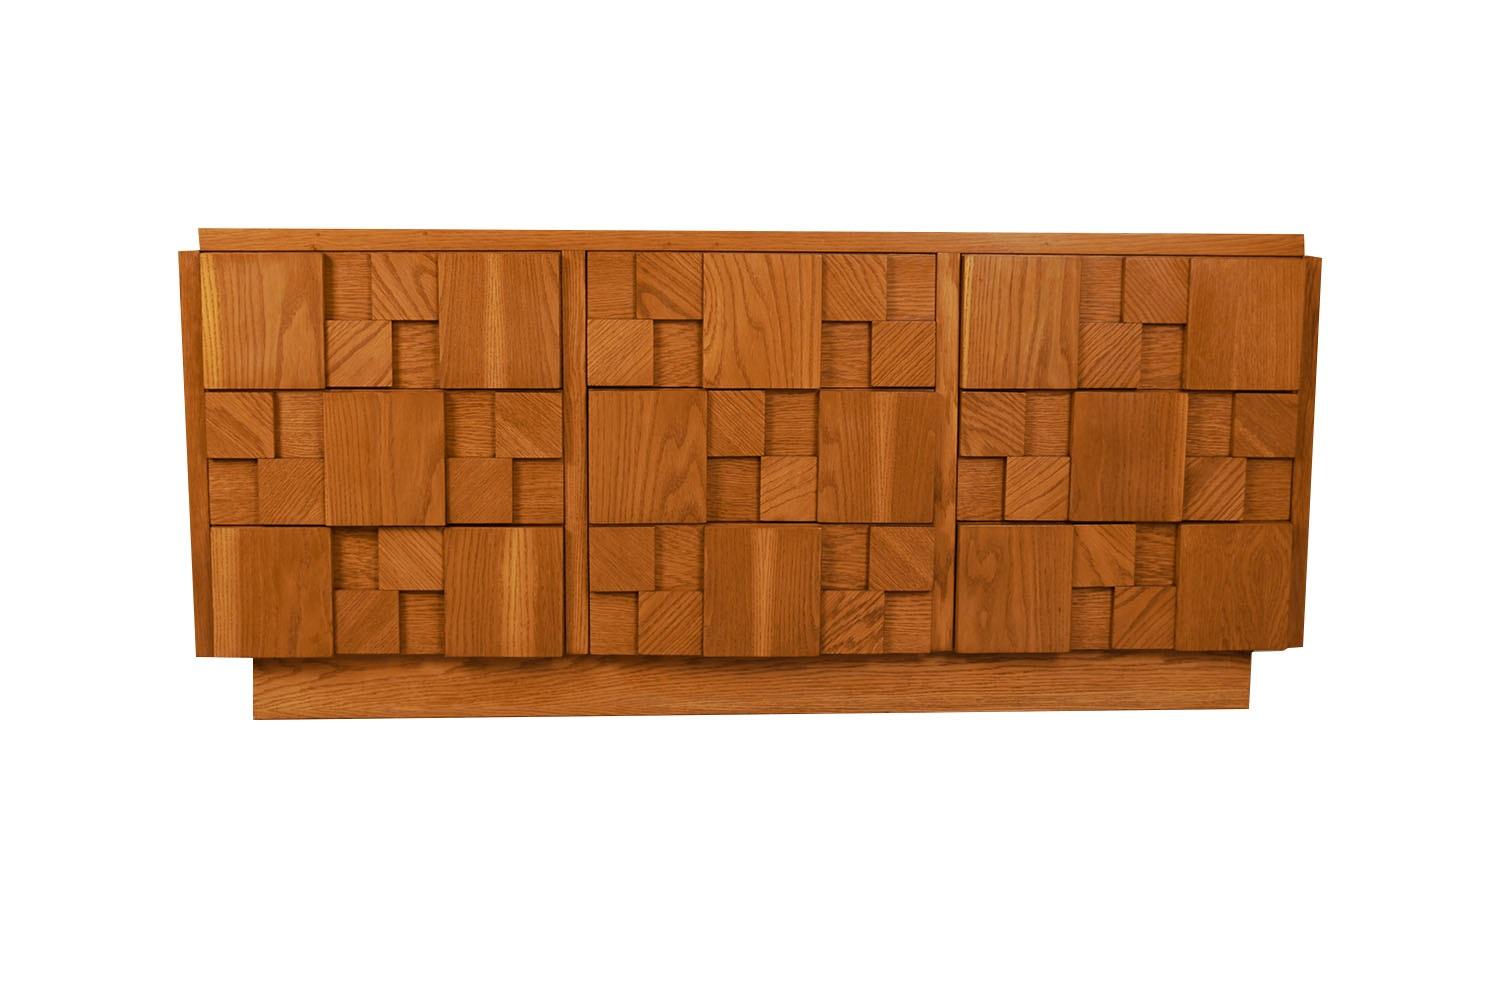 Une commode à neuf tiroirs de style cubiste unique de Lane furniture présente le style brutaliste rendu populaire par Paul Evans. Audacieux et impressionnant, avec une construction en bois massif lourd, des façades de tiroirs géométriques figurés.